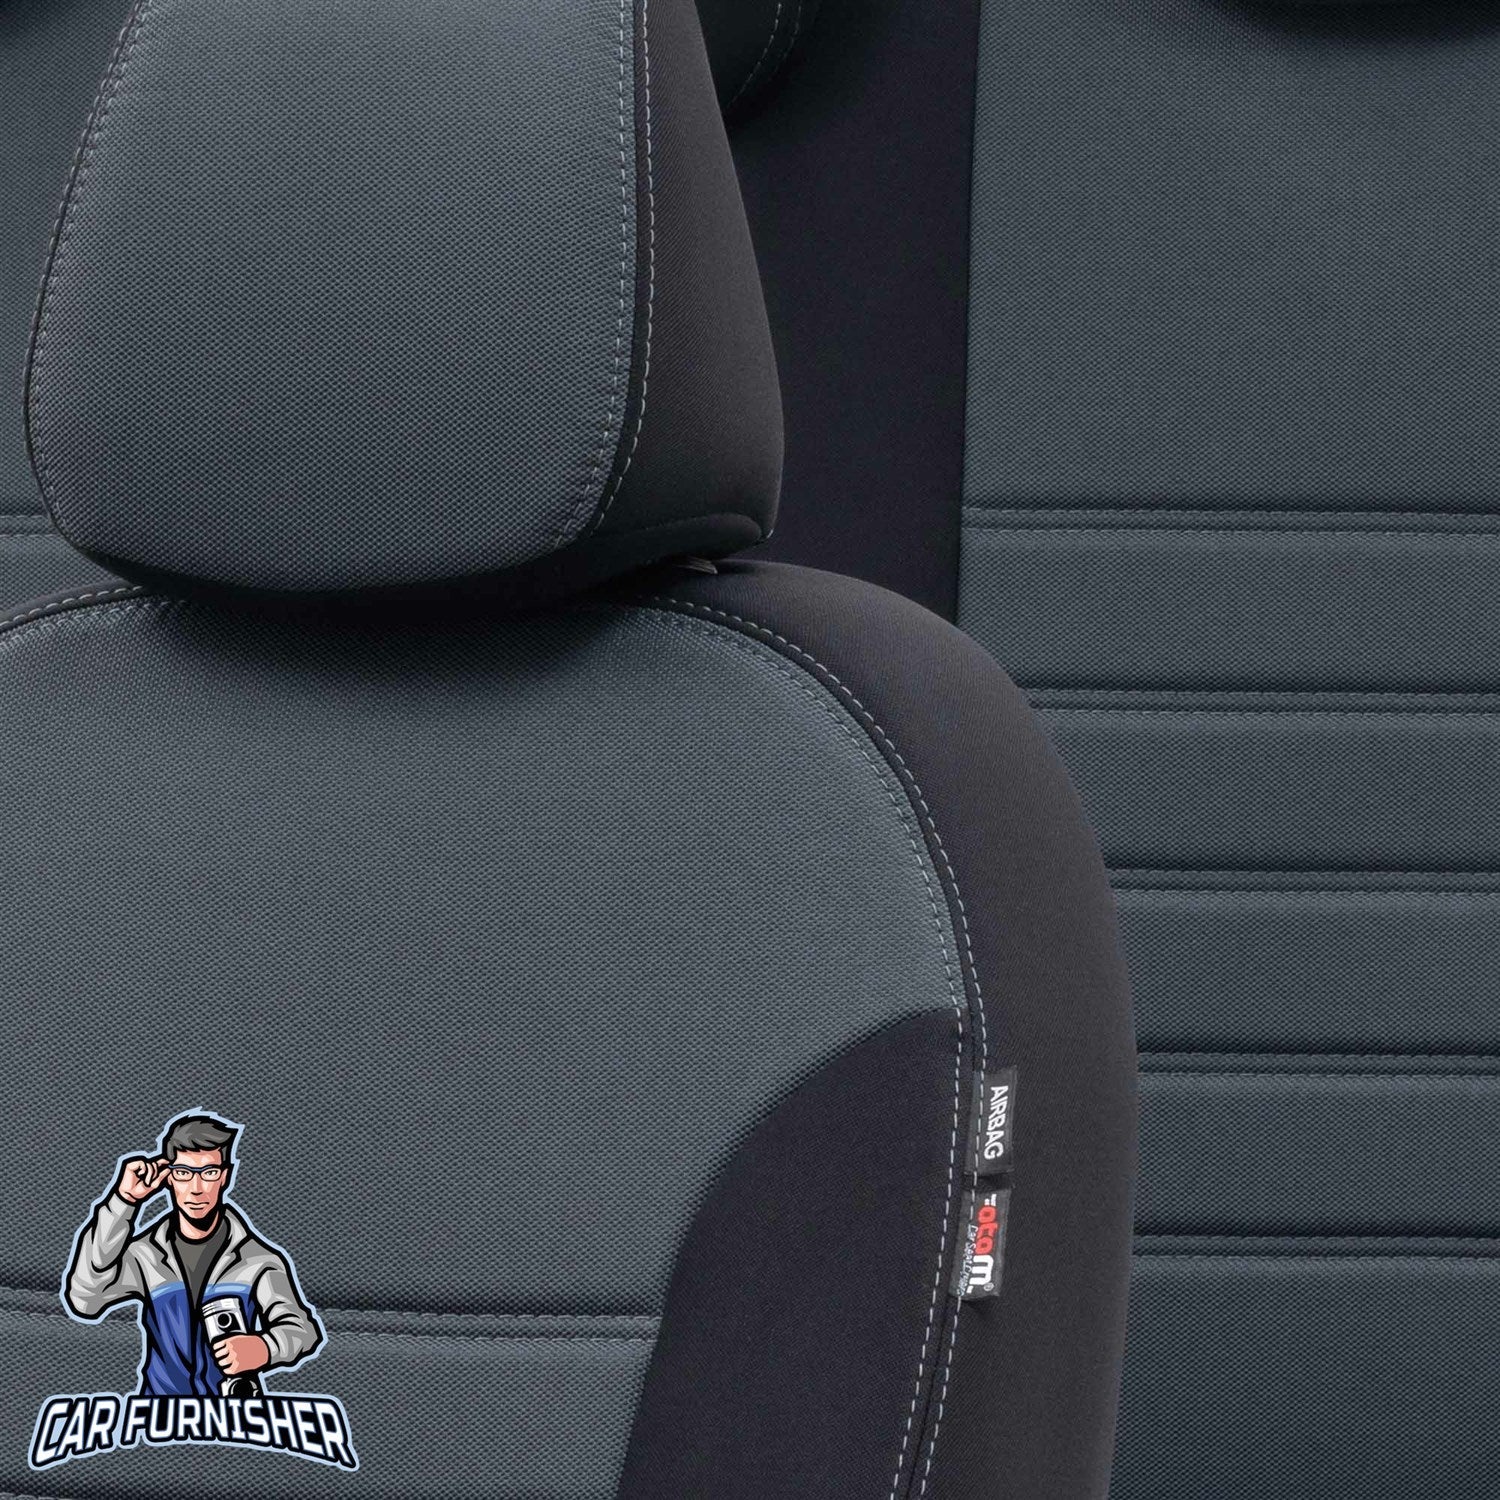 Kia Bongo Seat Covers Original Jacquard Design Smoked Black Jacquard Fabric